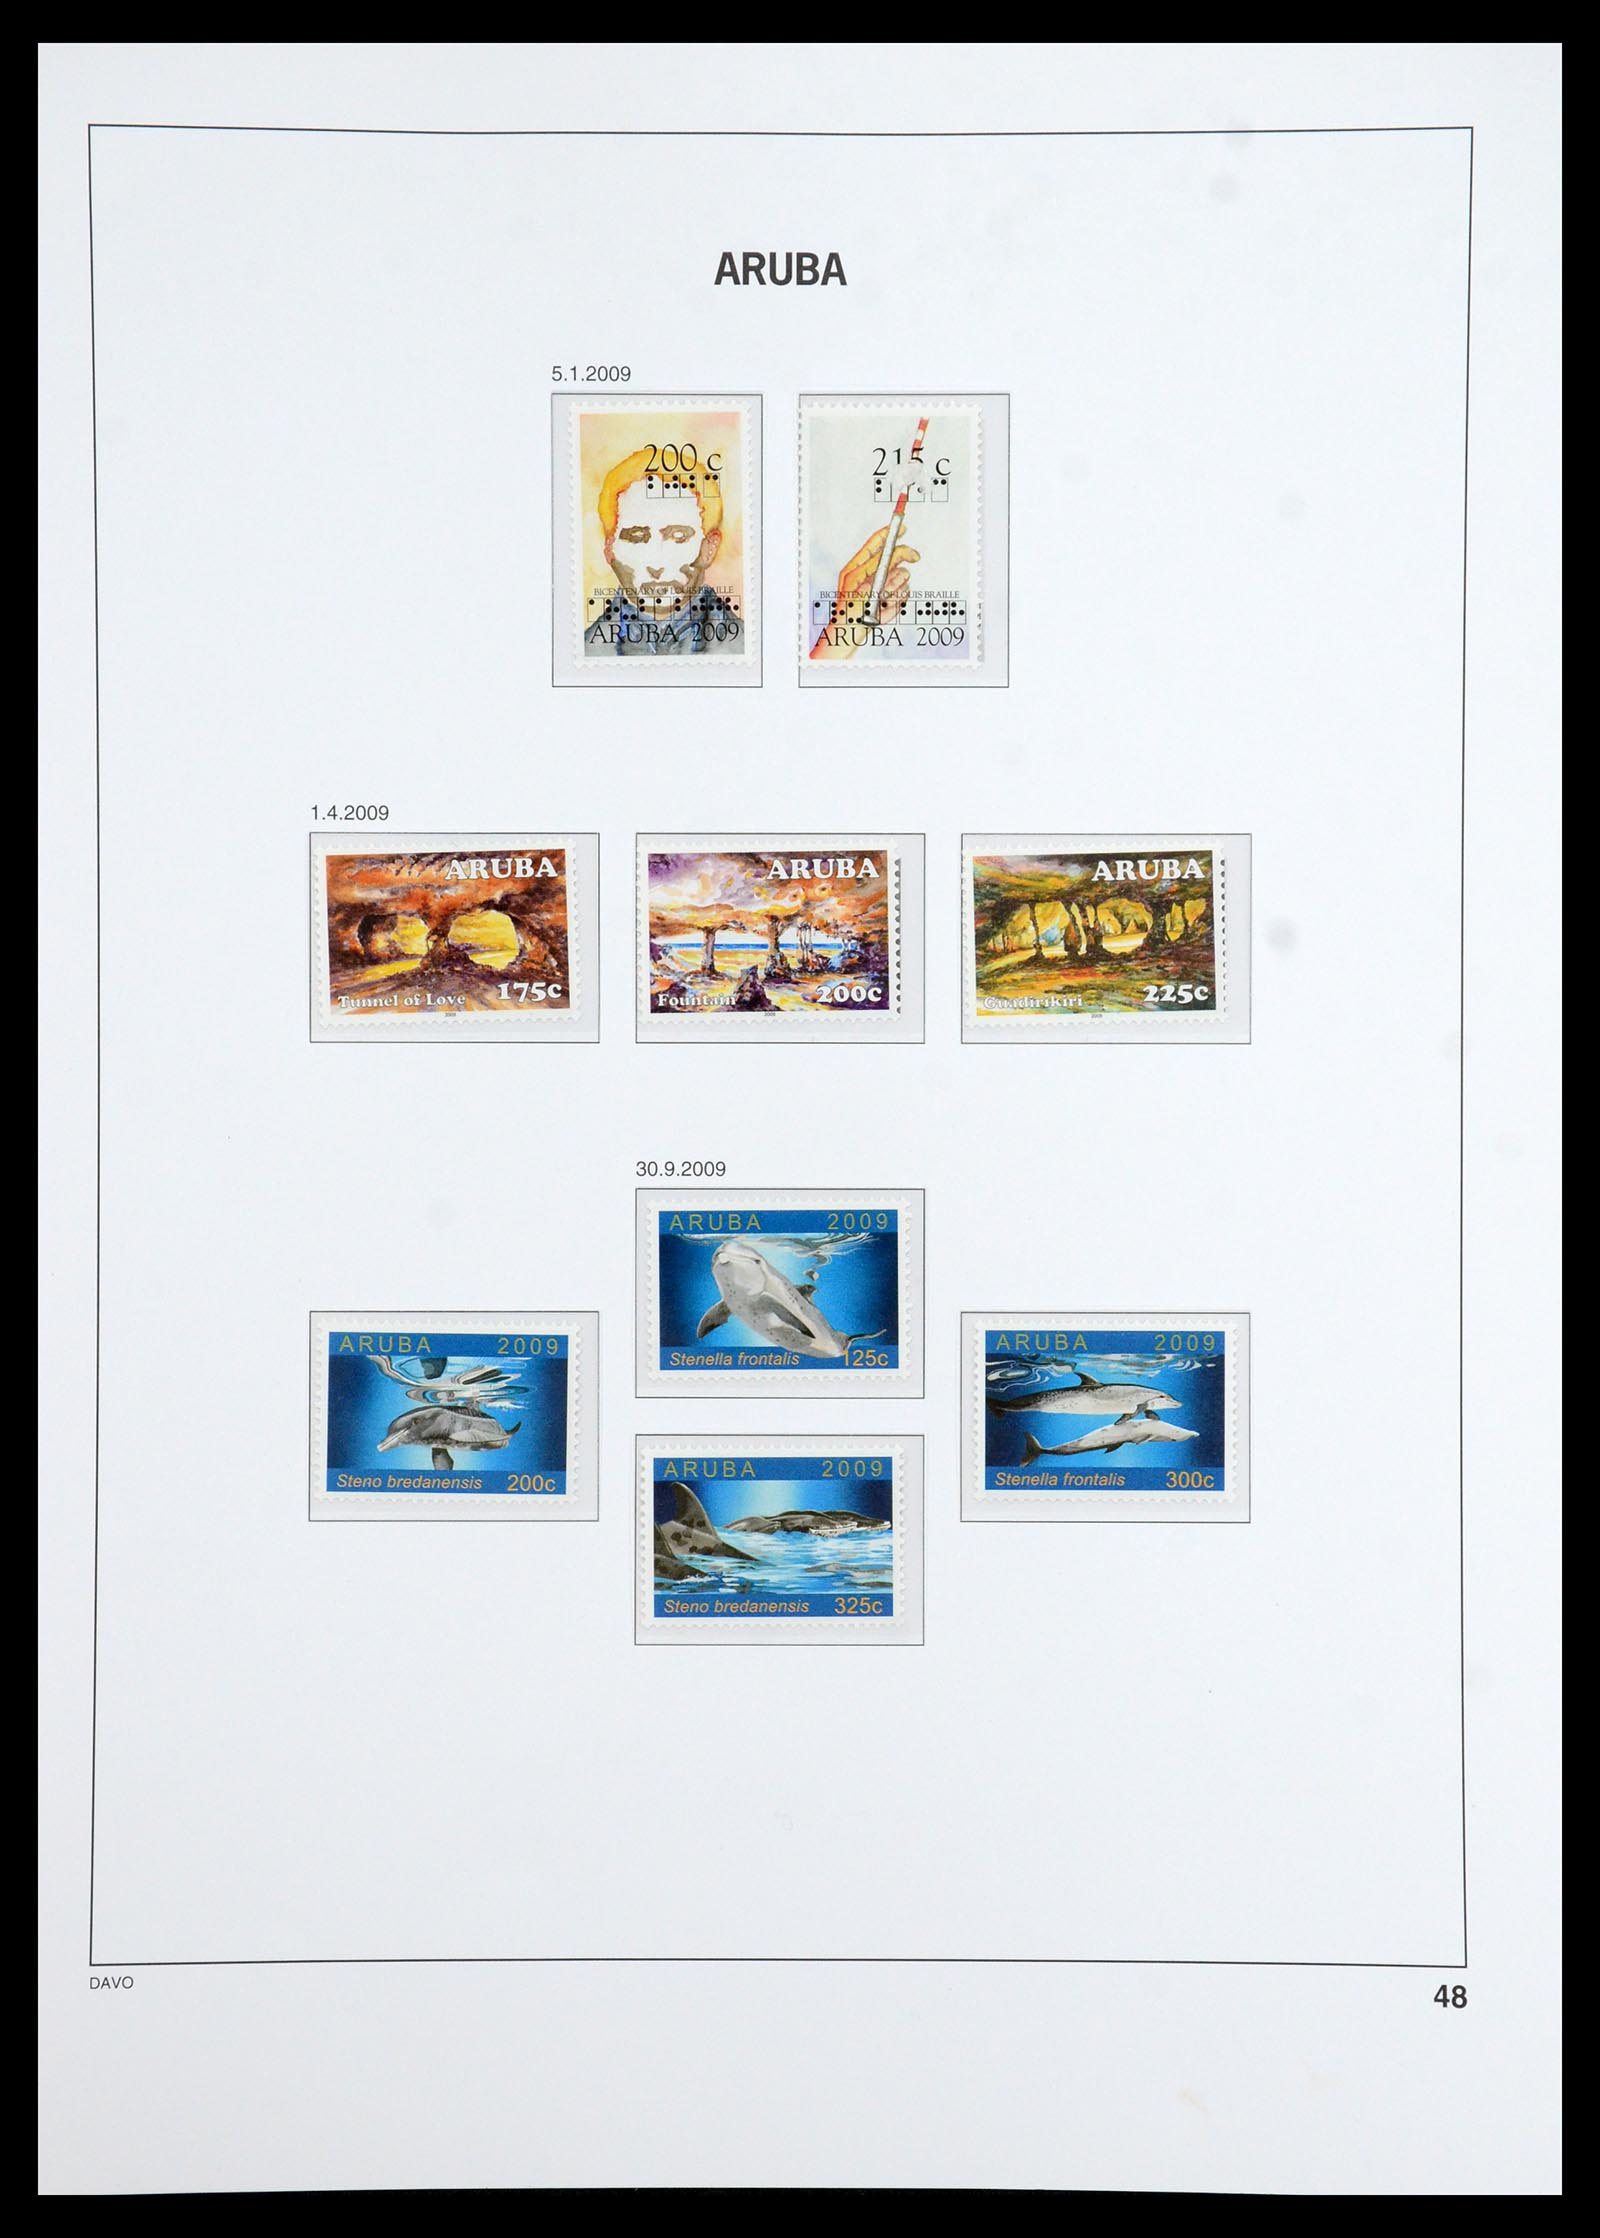 36369 054 - Stamp collection 36369 Aruba 1986-2009.